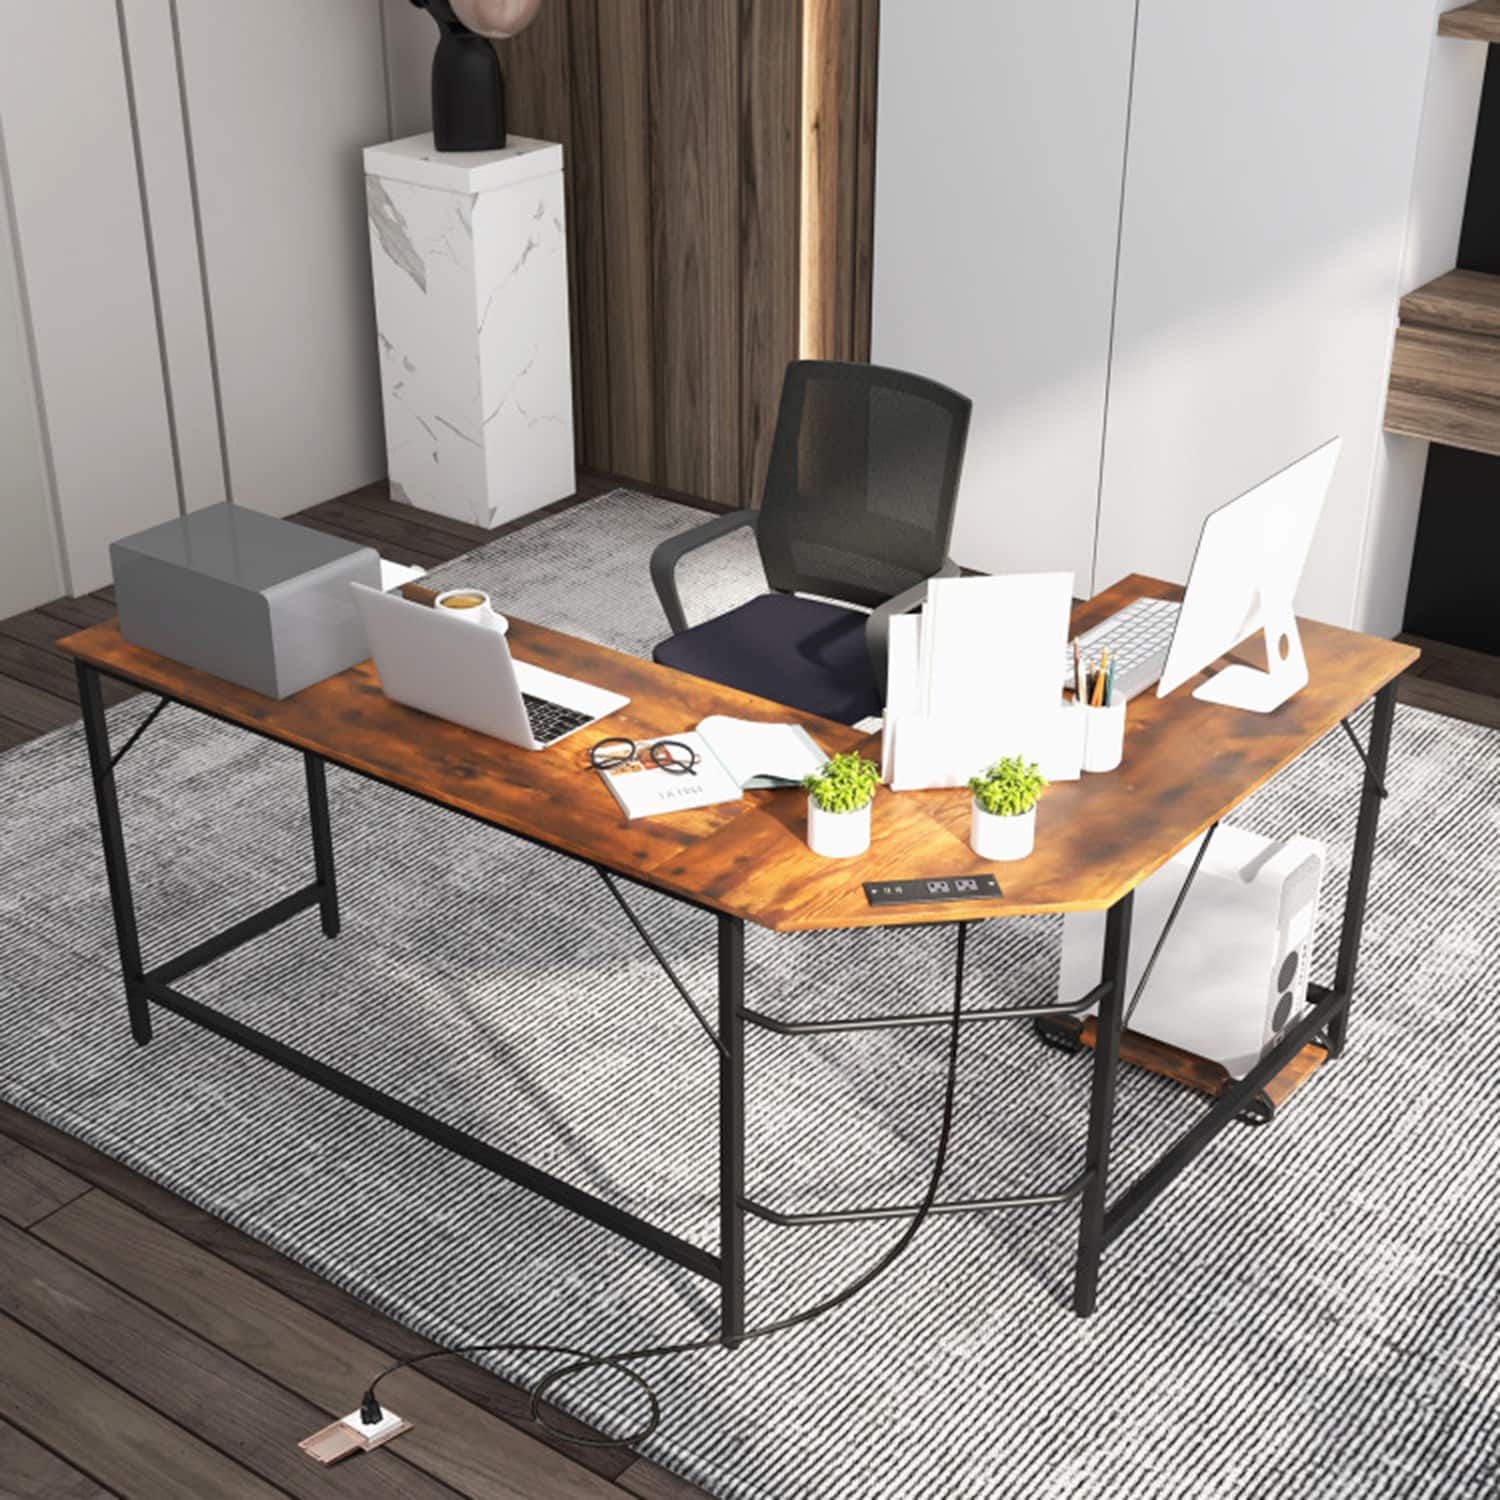 47.2 Home Office Desk / Computer Desk, Storage Desk Morden Style with Open Shelves Worksation - Brown